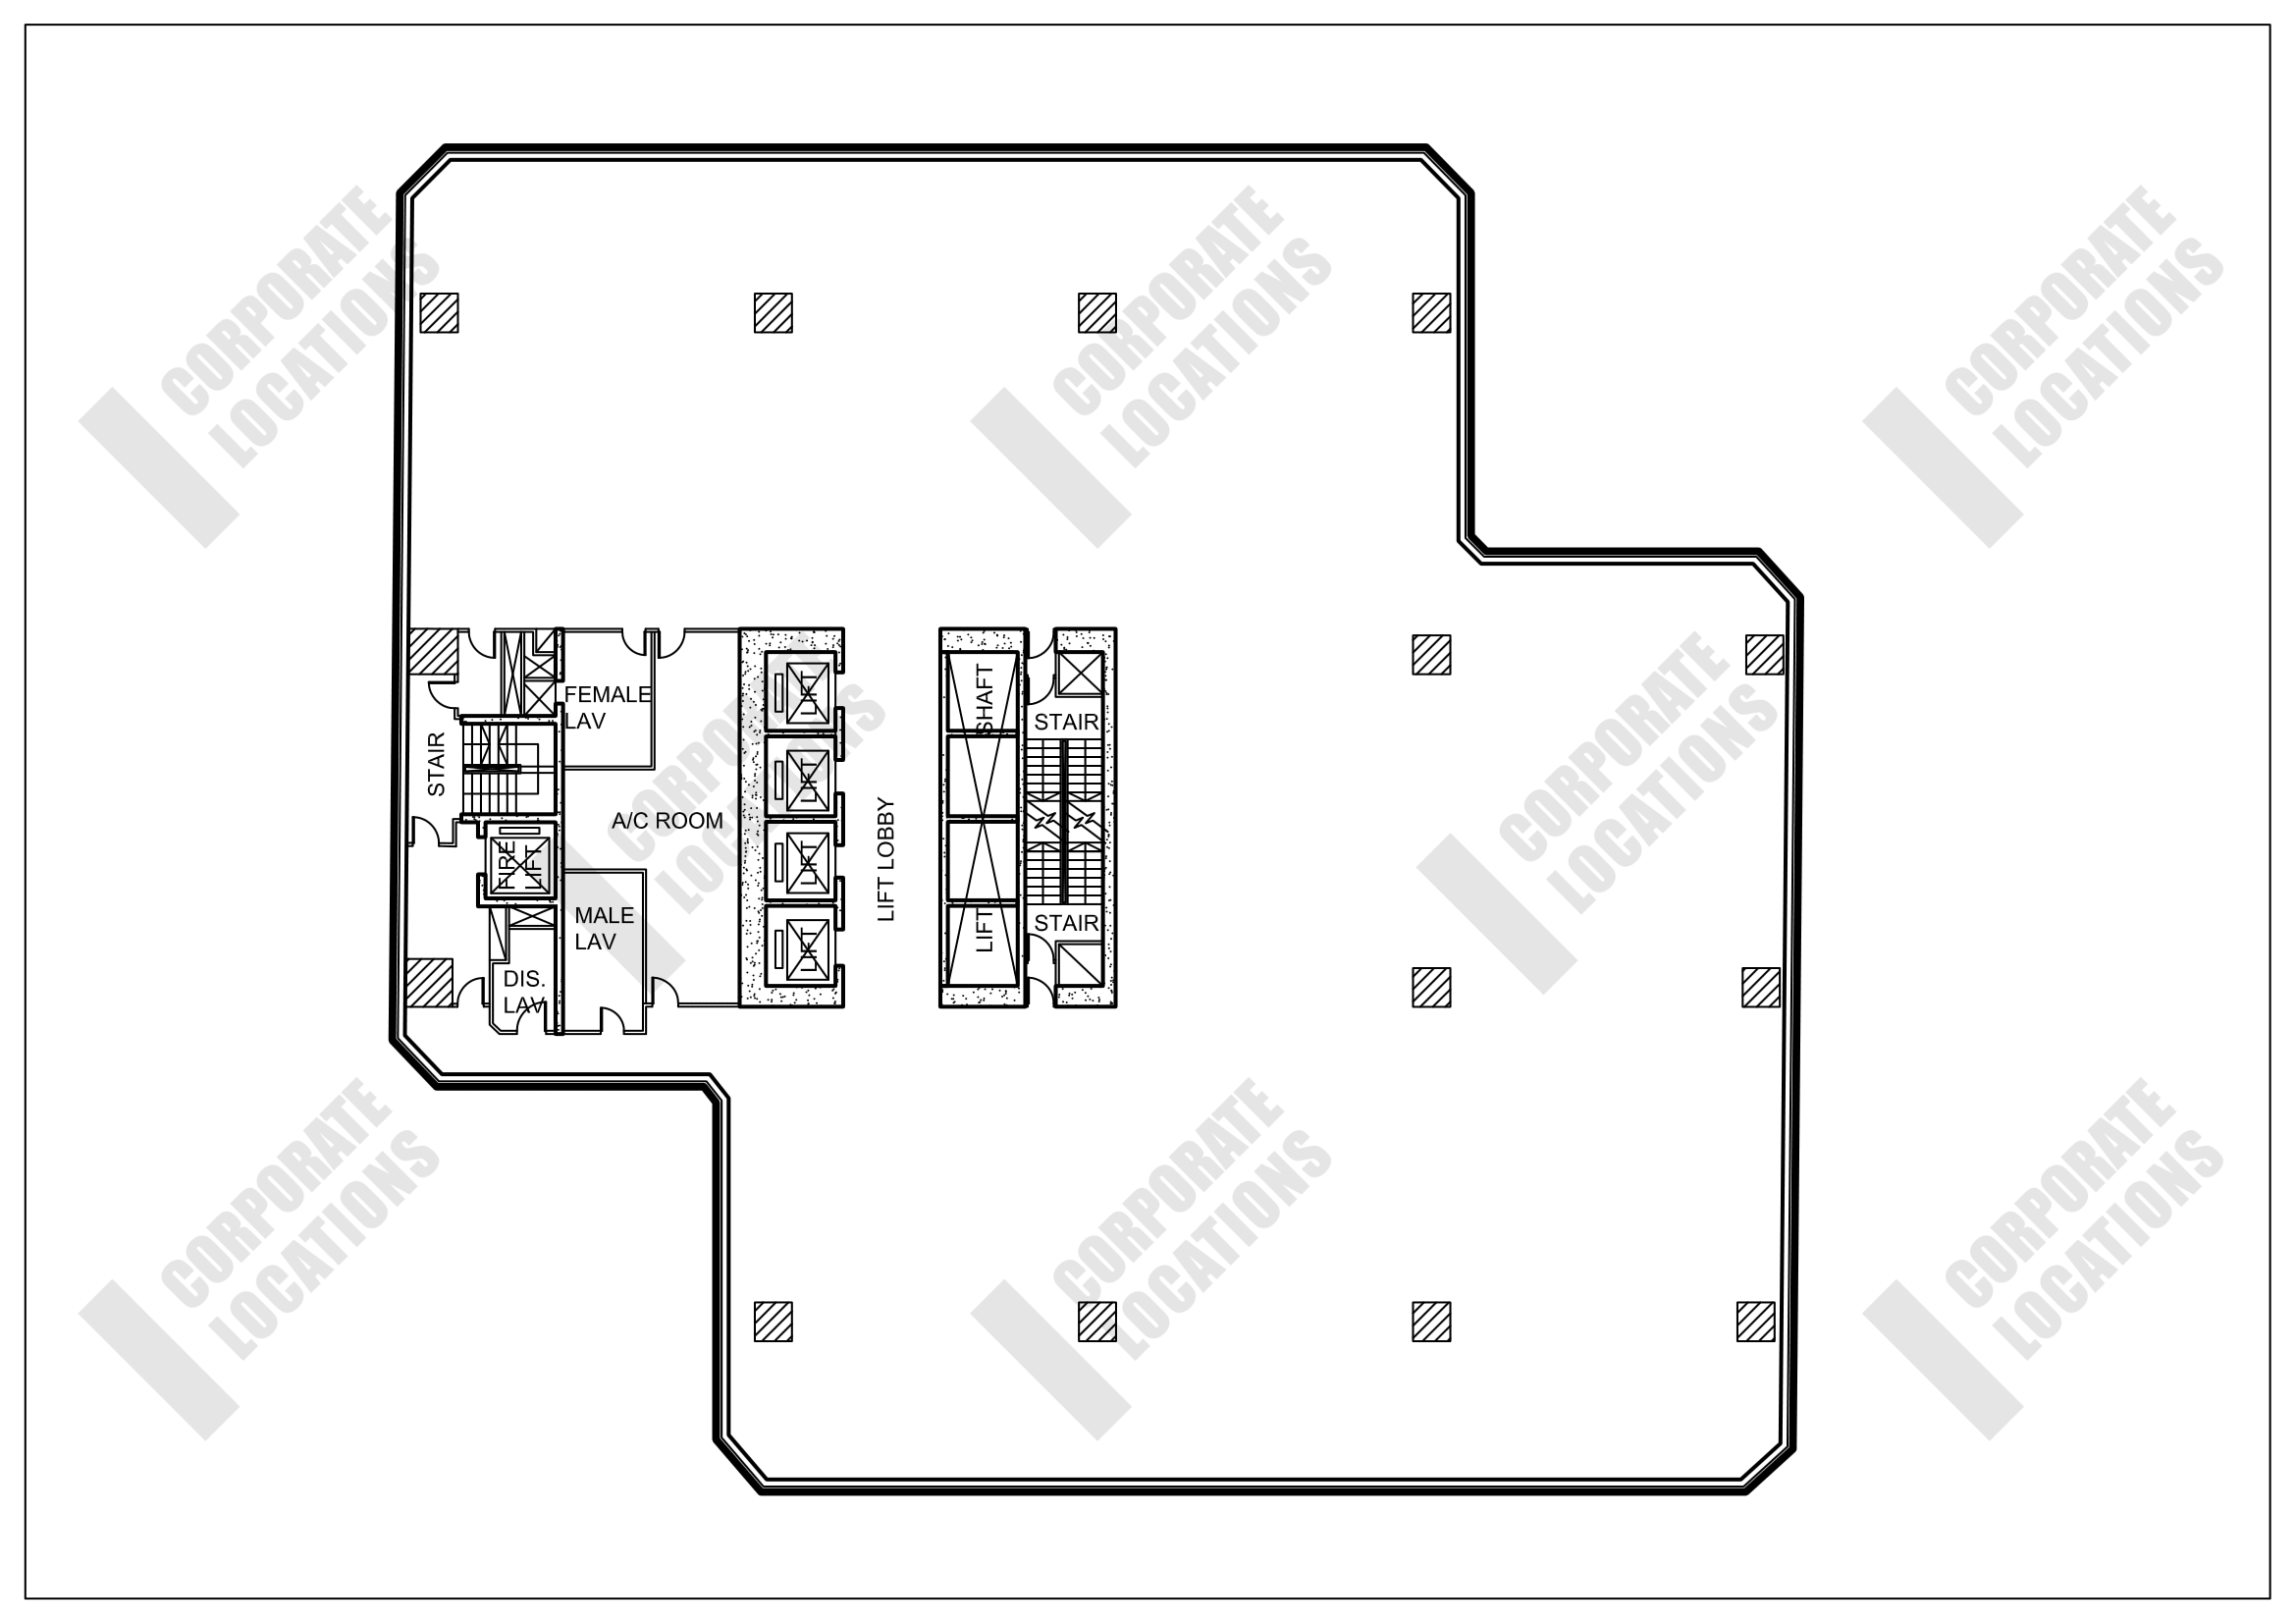 Floorplan World-Wide House